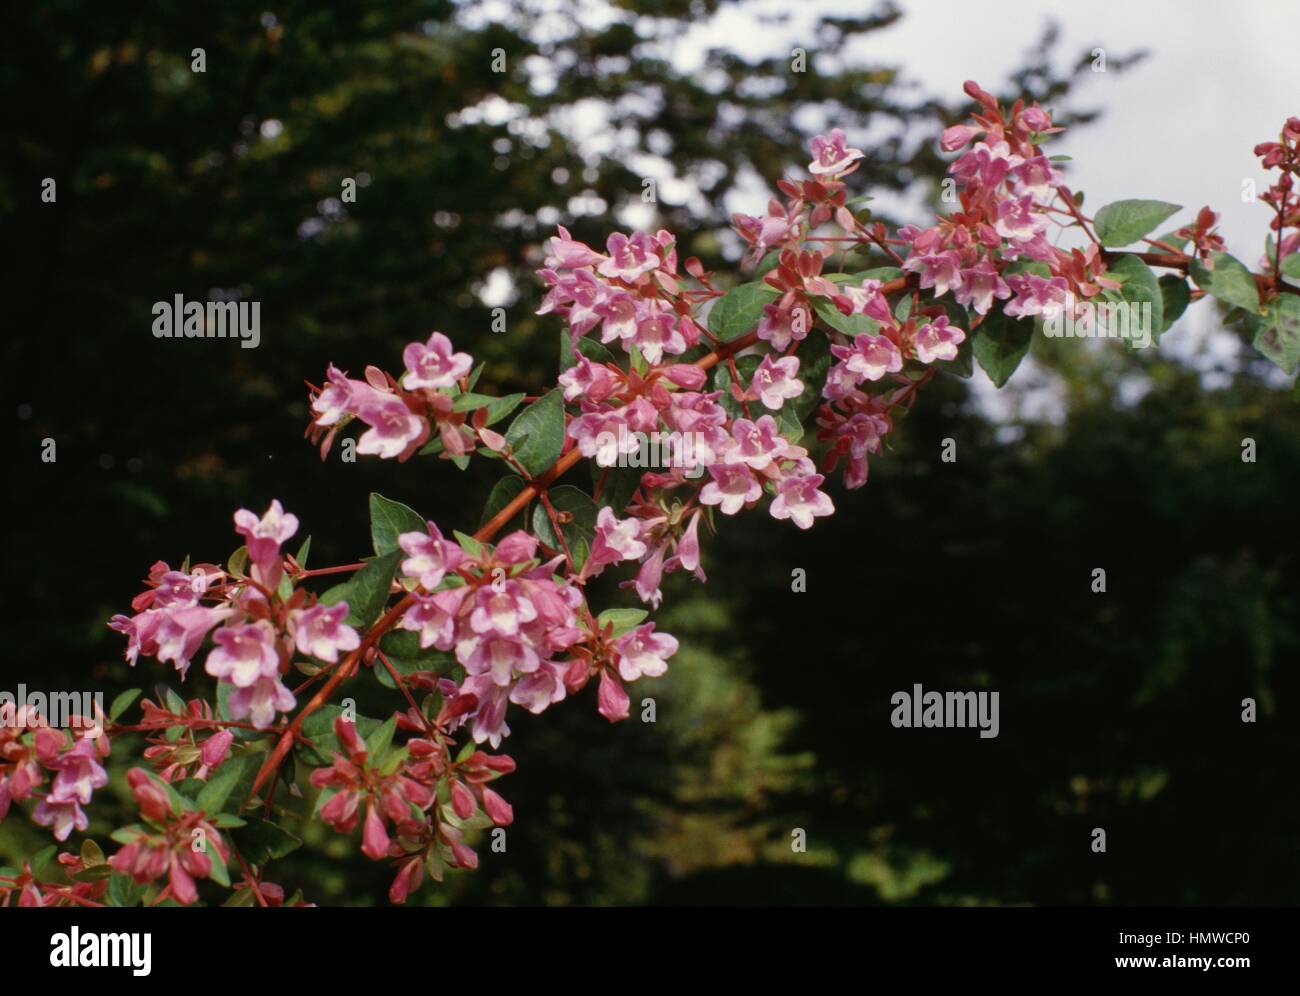 Schumann abelia (Abelia schumannii, Abelia longituba or Abelia parvifolia), Caprifoliaceae. Stock Photo